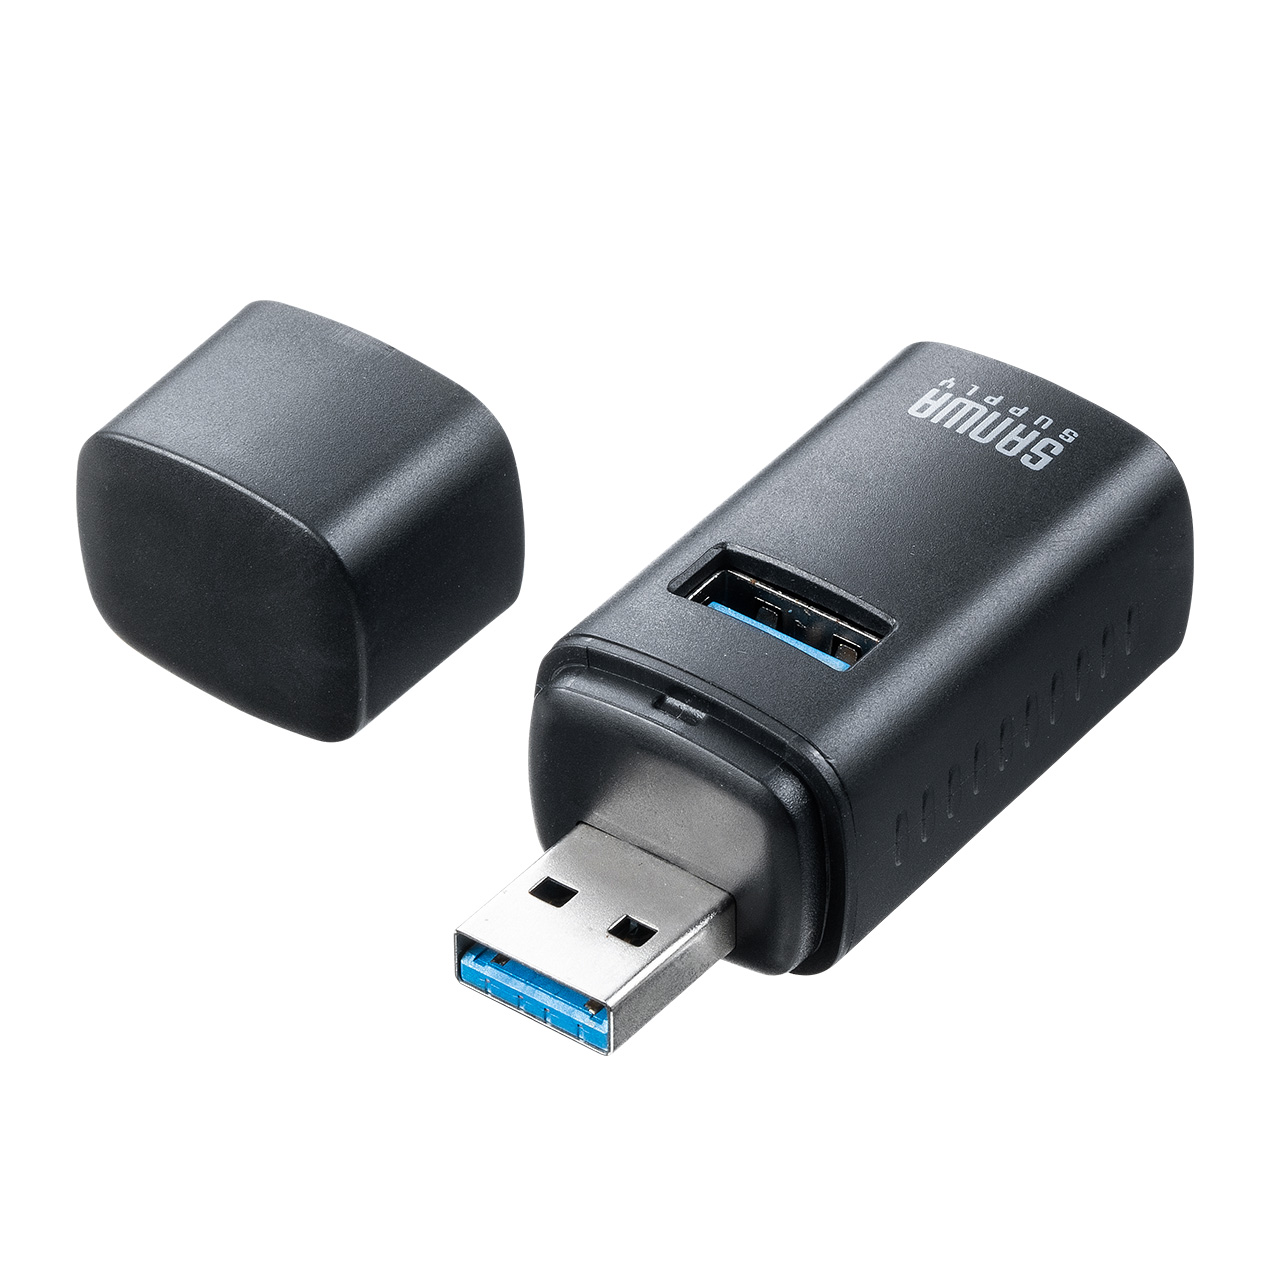 USBハブ コンパクト 小型 USB A 3ポート USB3.0/USB2.0コンボハブ 黒色 軽量 400-HUBA17BK